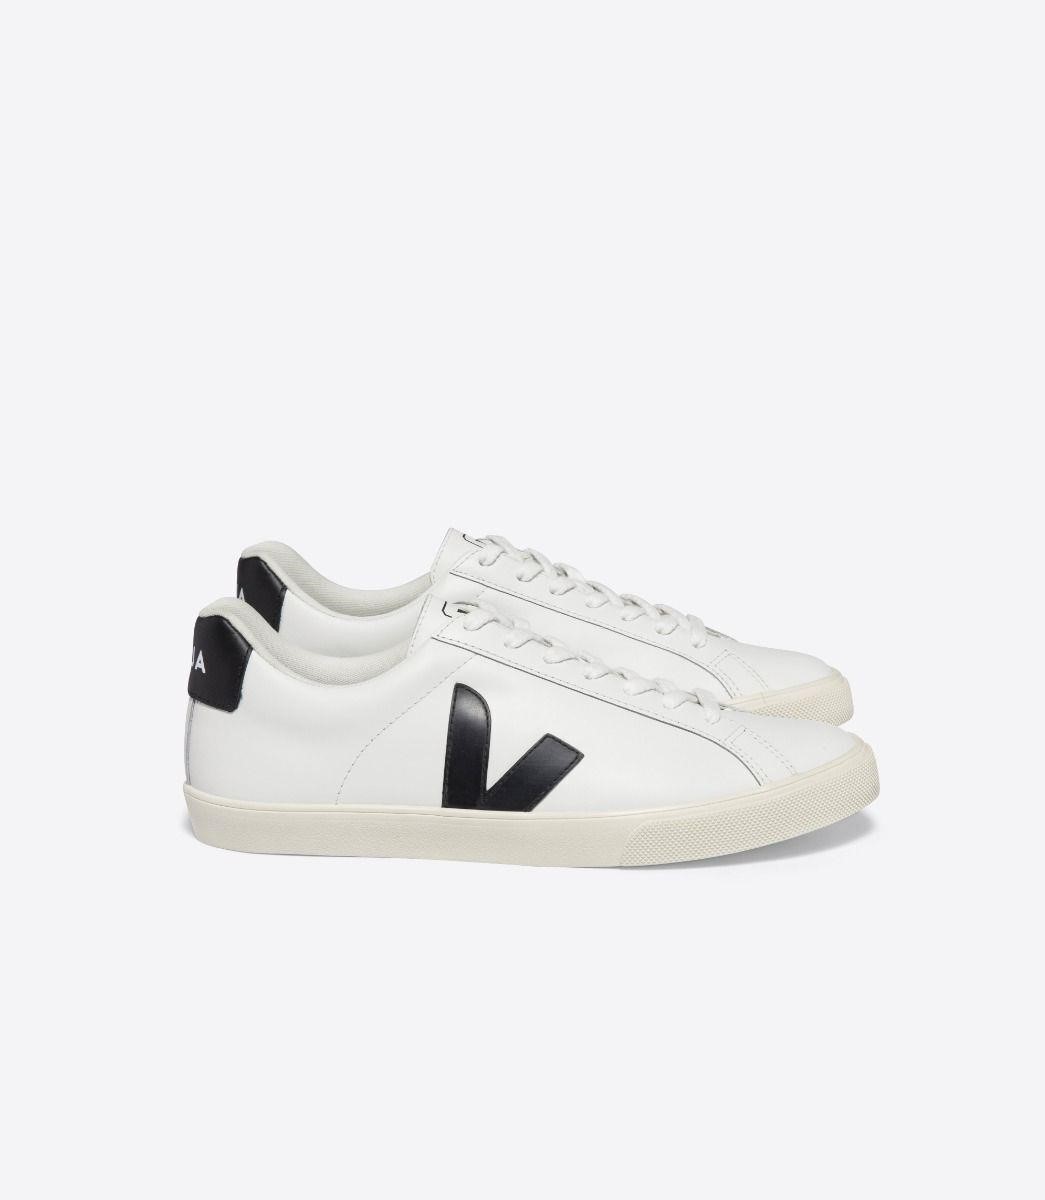 Veja Esplar Leather White Black Sneakers Size 8